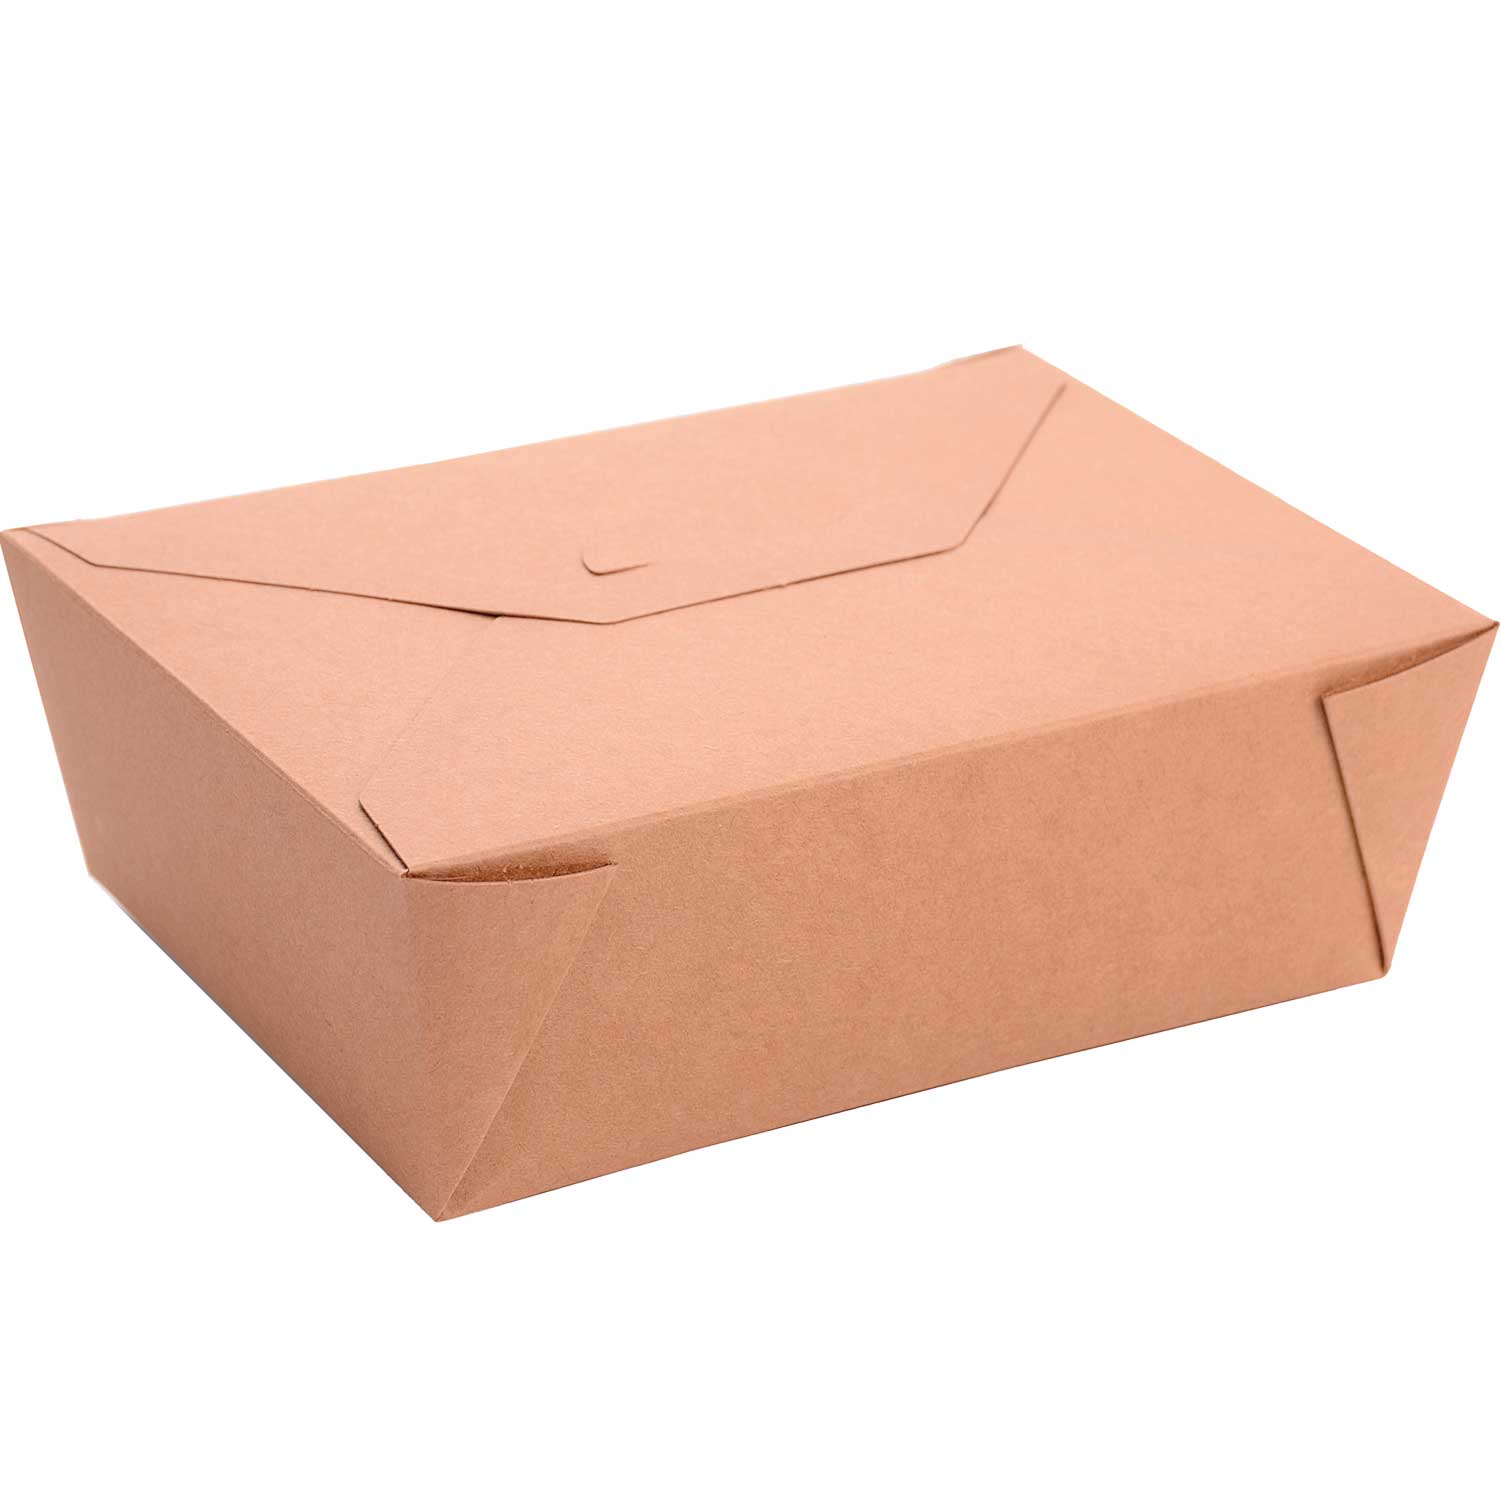 Foldable takeaway box. 68 oz (160)